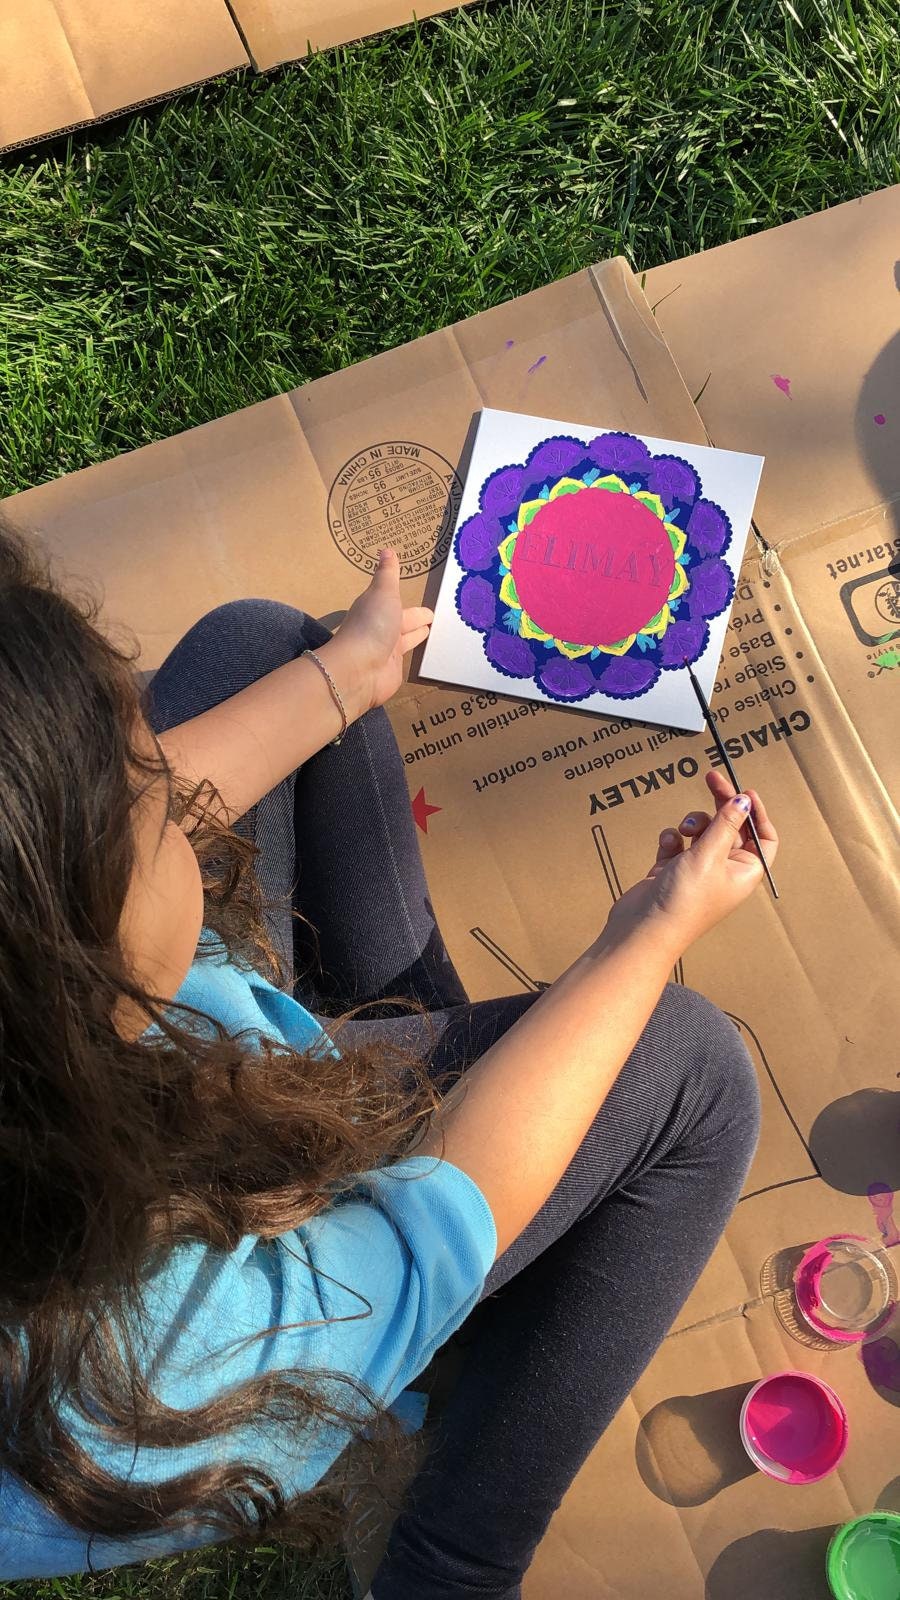 Kit d'art DIY Mandala, kit de peinture personnalisé à faire soi-même pour les enfants.